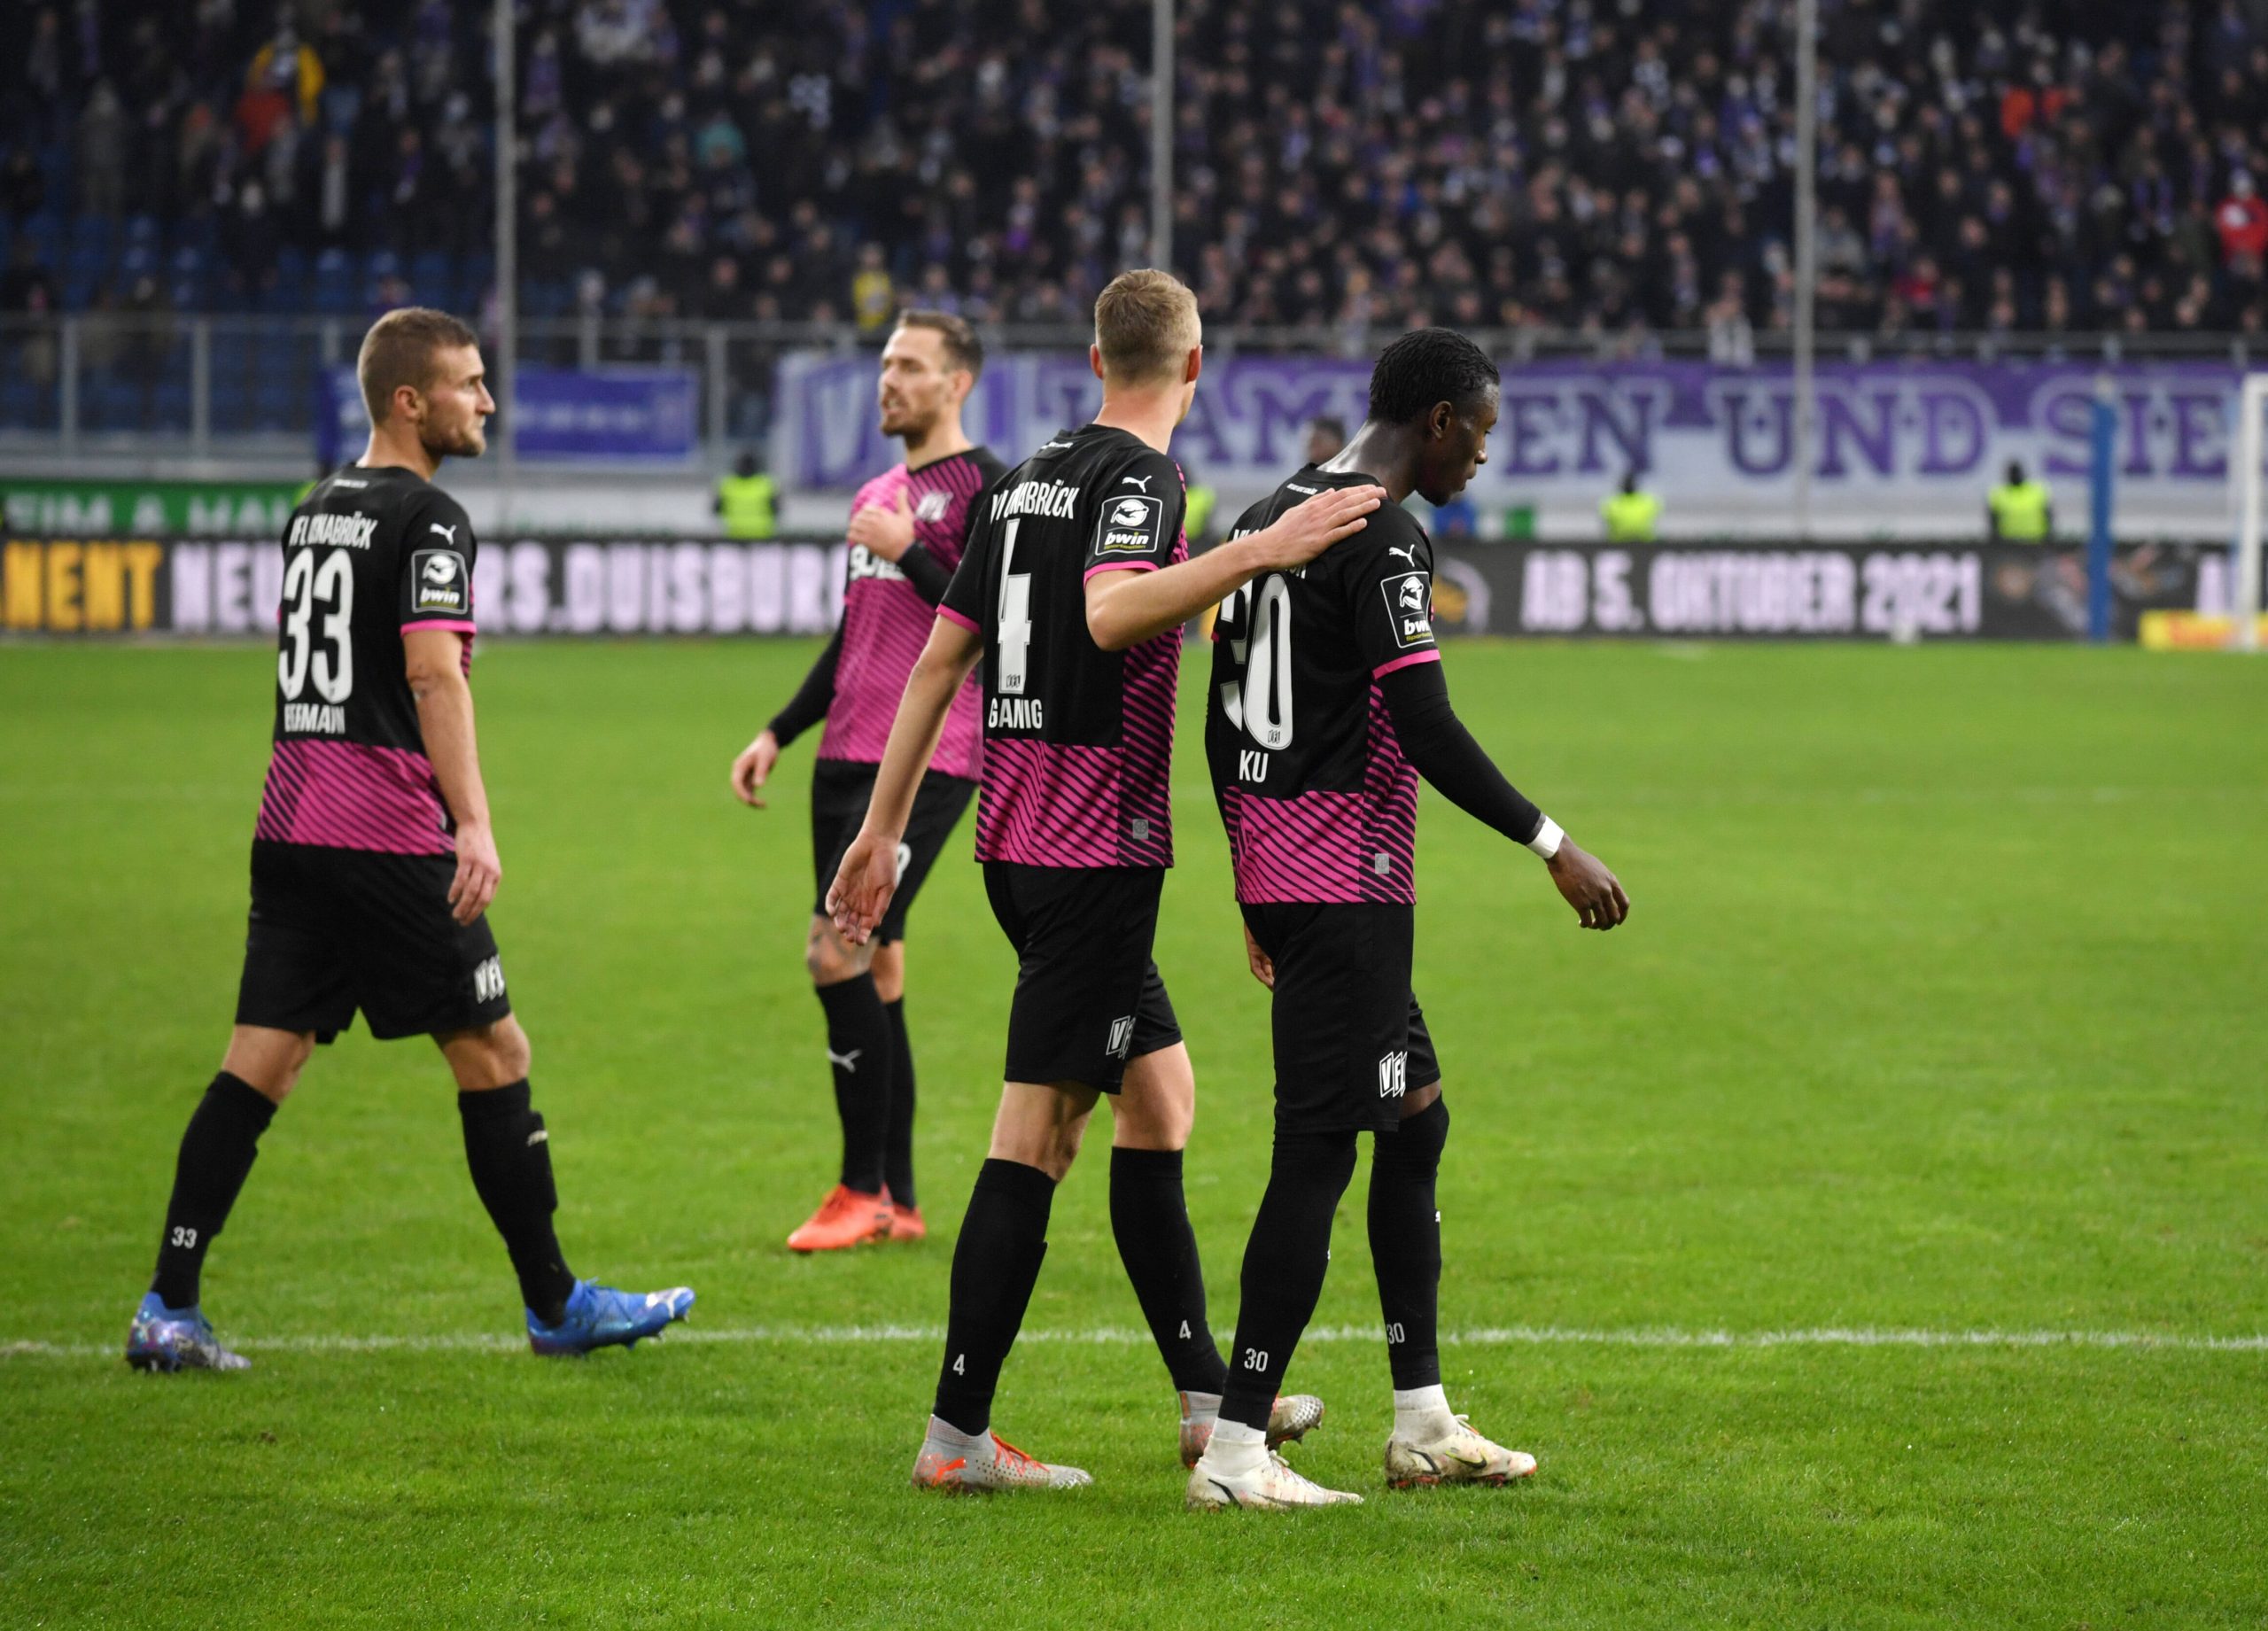 Eklat bei HSV-Spiel gegen Hannover: Partie stand kurz vor dem Abbruch